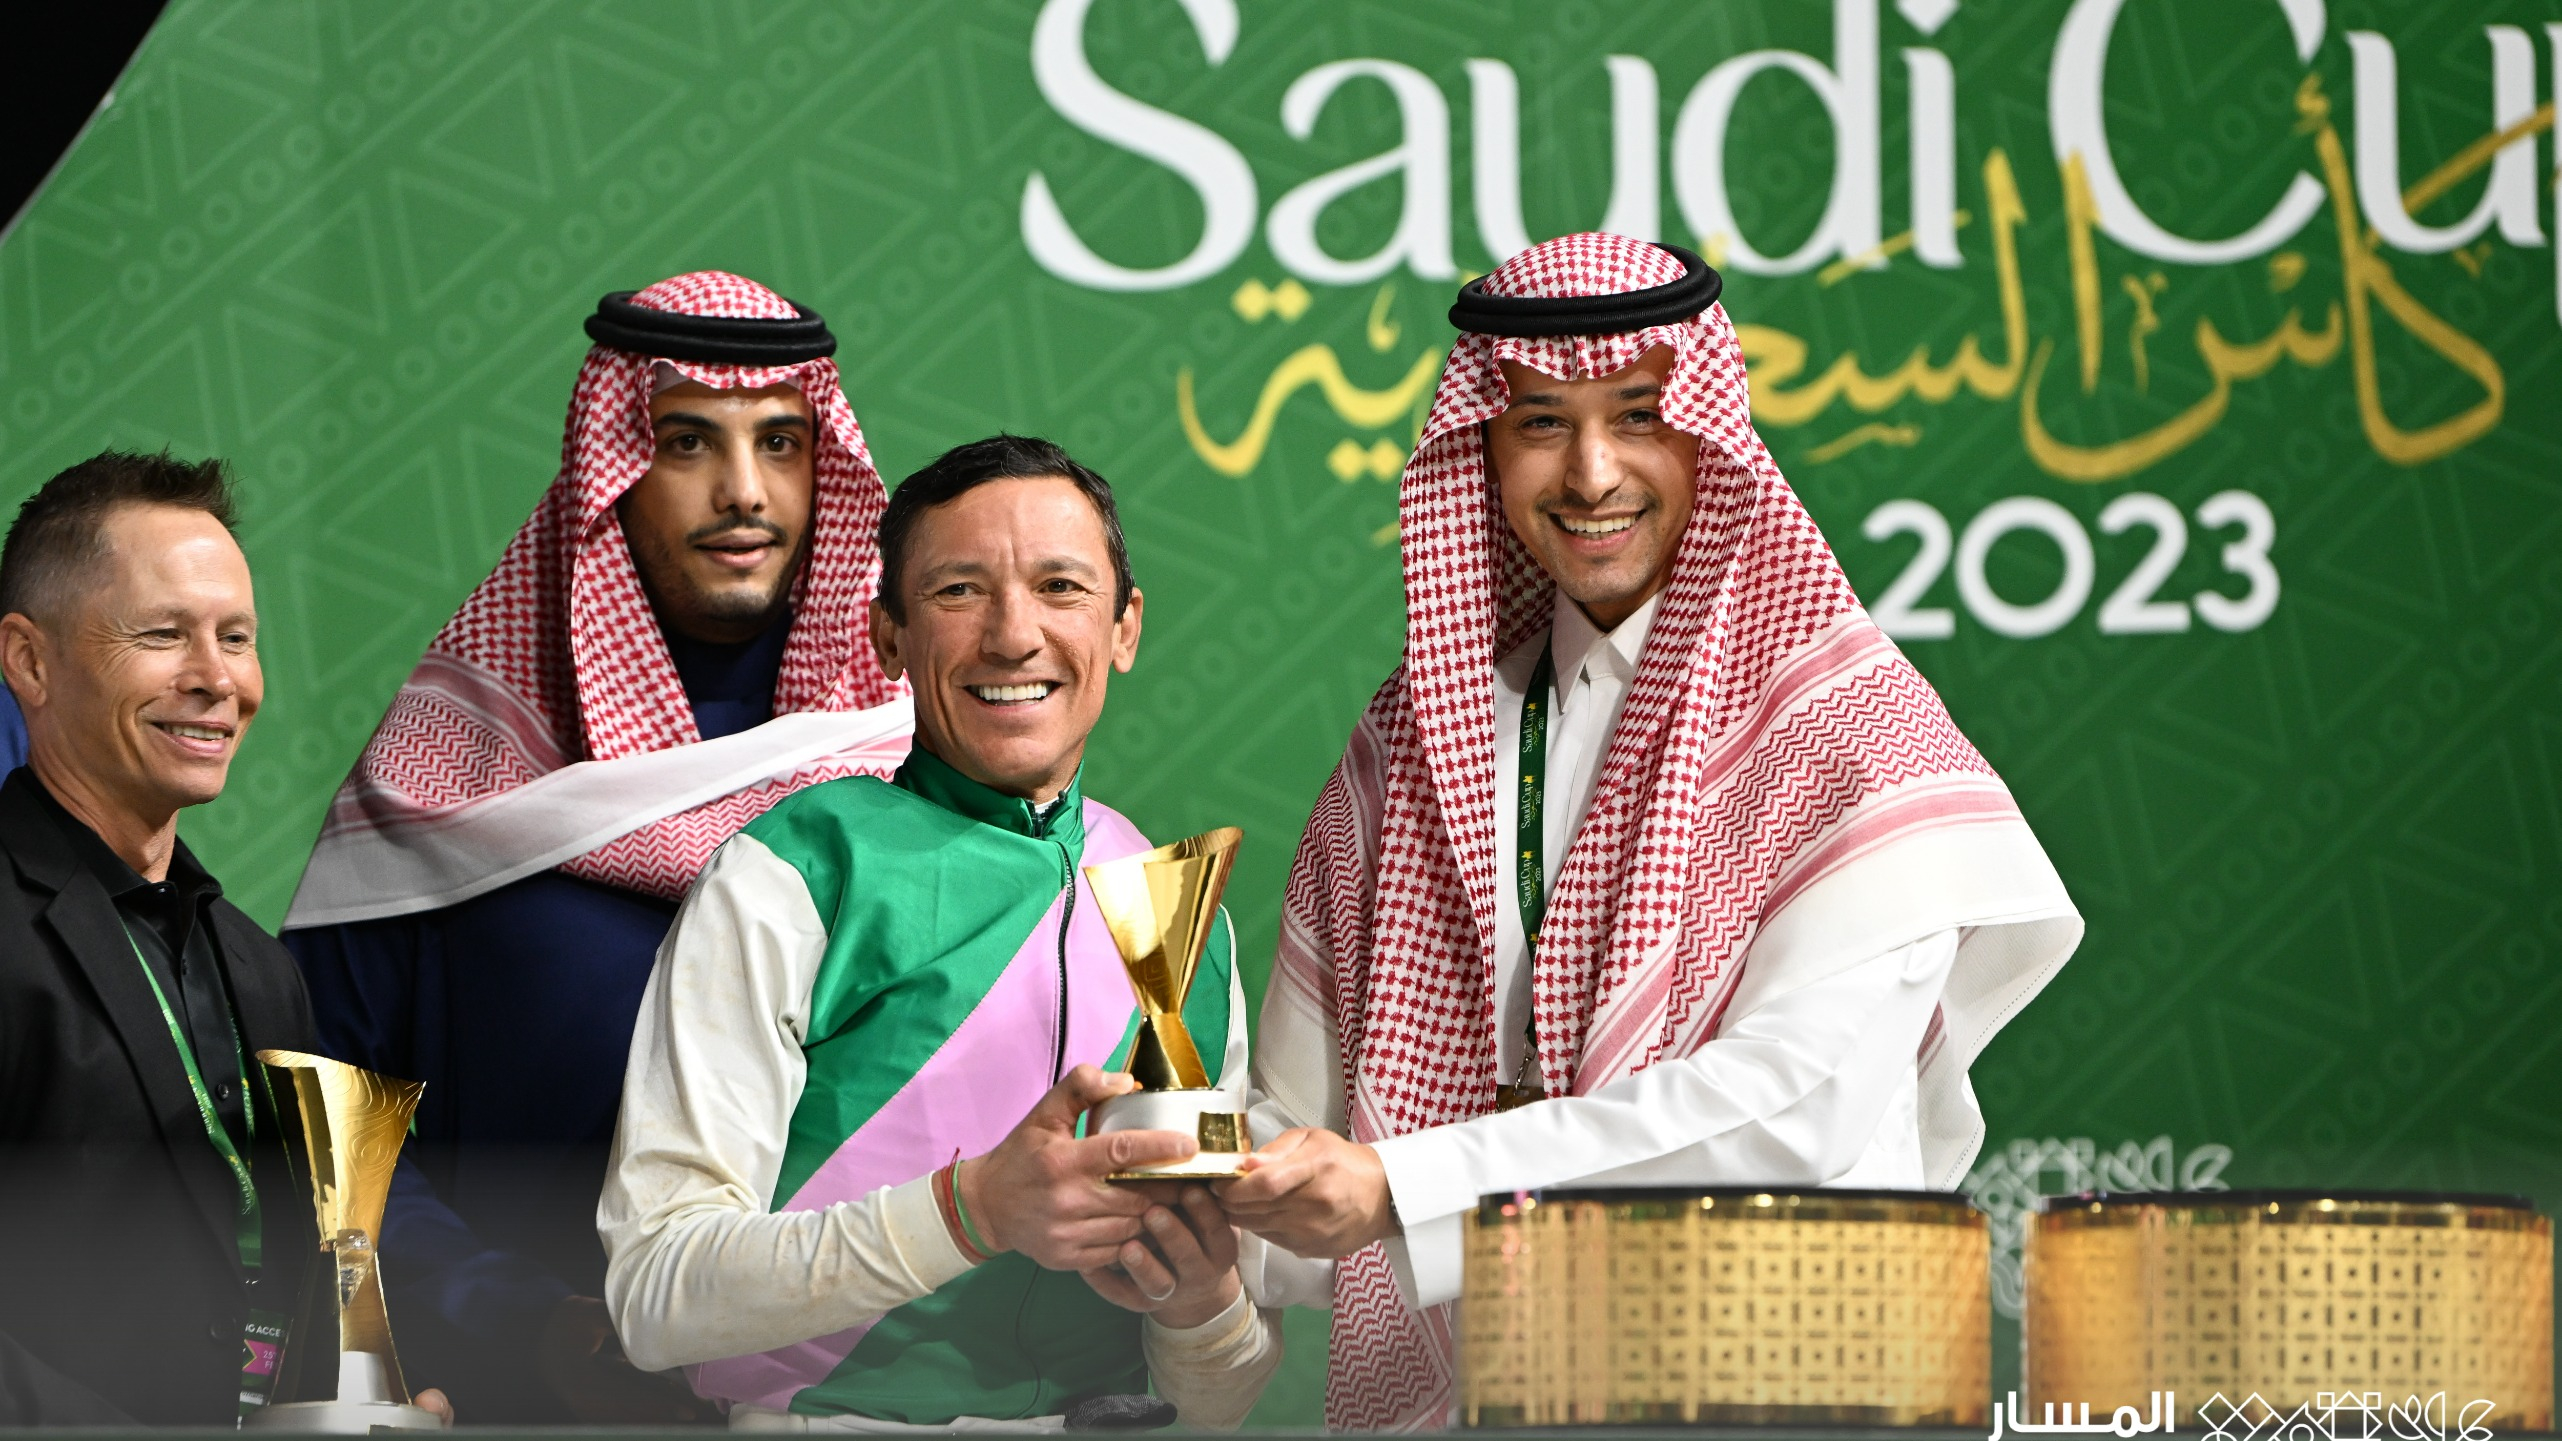 نبارك للفائز بكأس الرياض للسرعة (فئة3) المقدم من #المسار_الرياضي🏅

#كأس_السعودية 2023